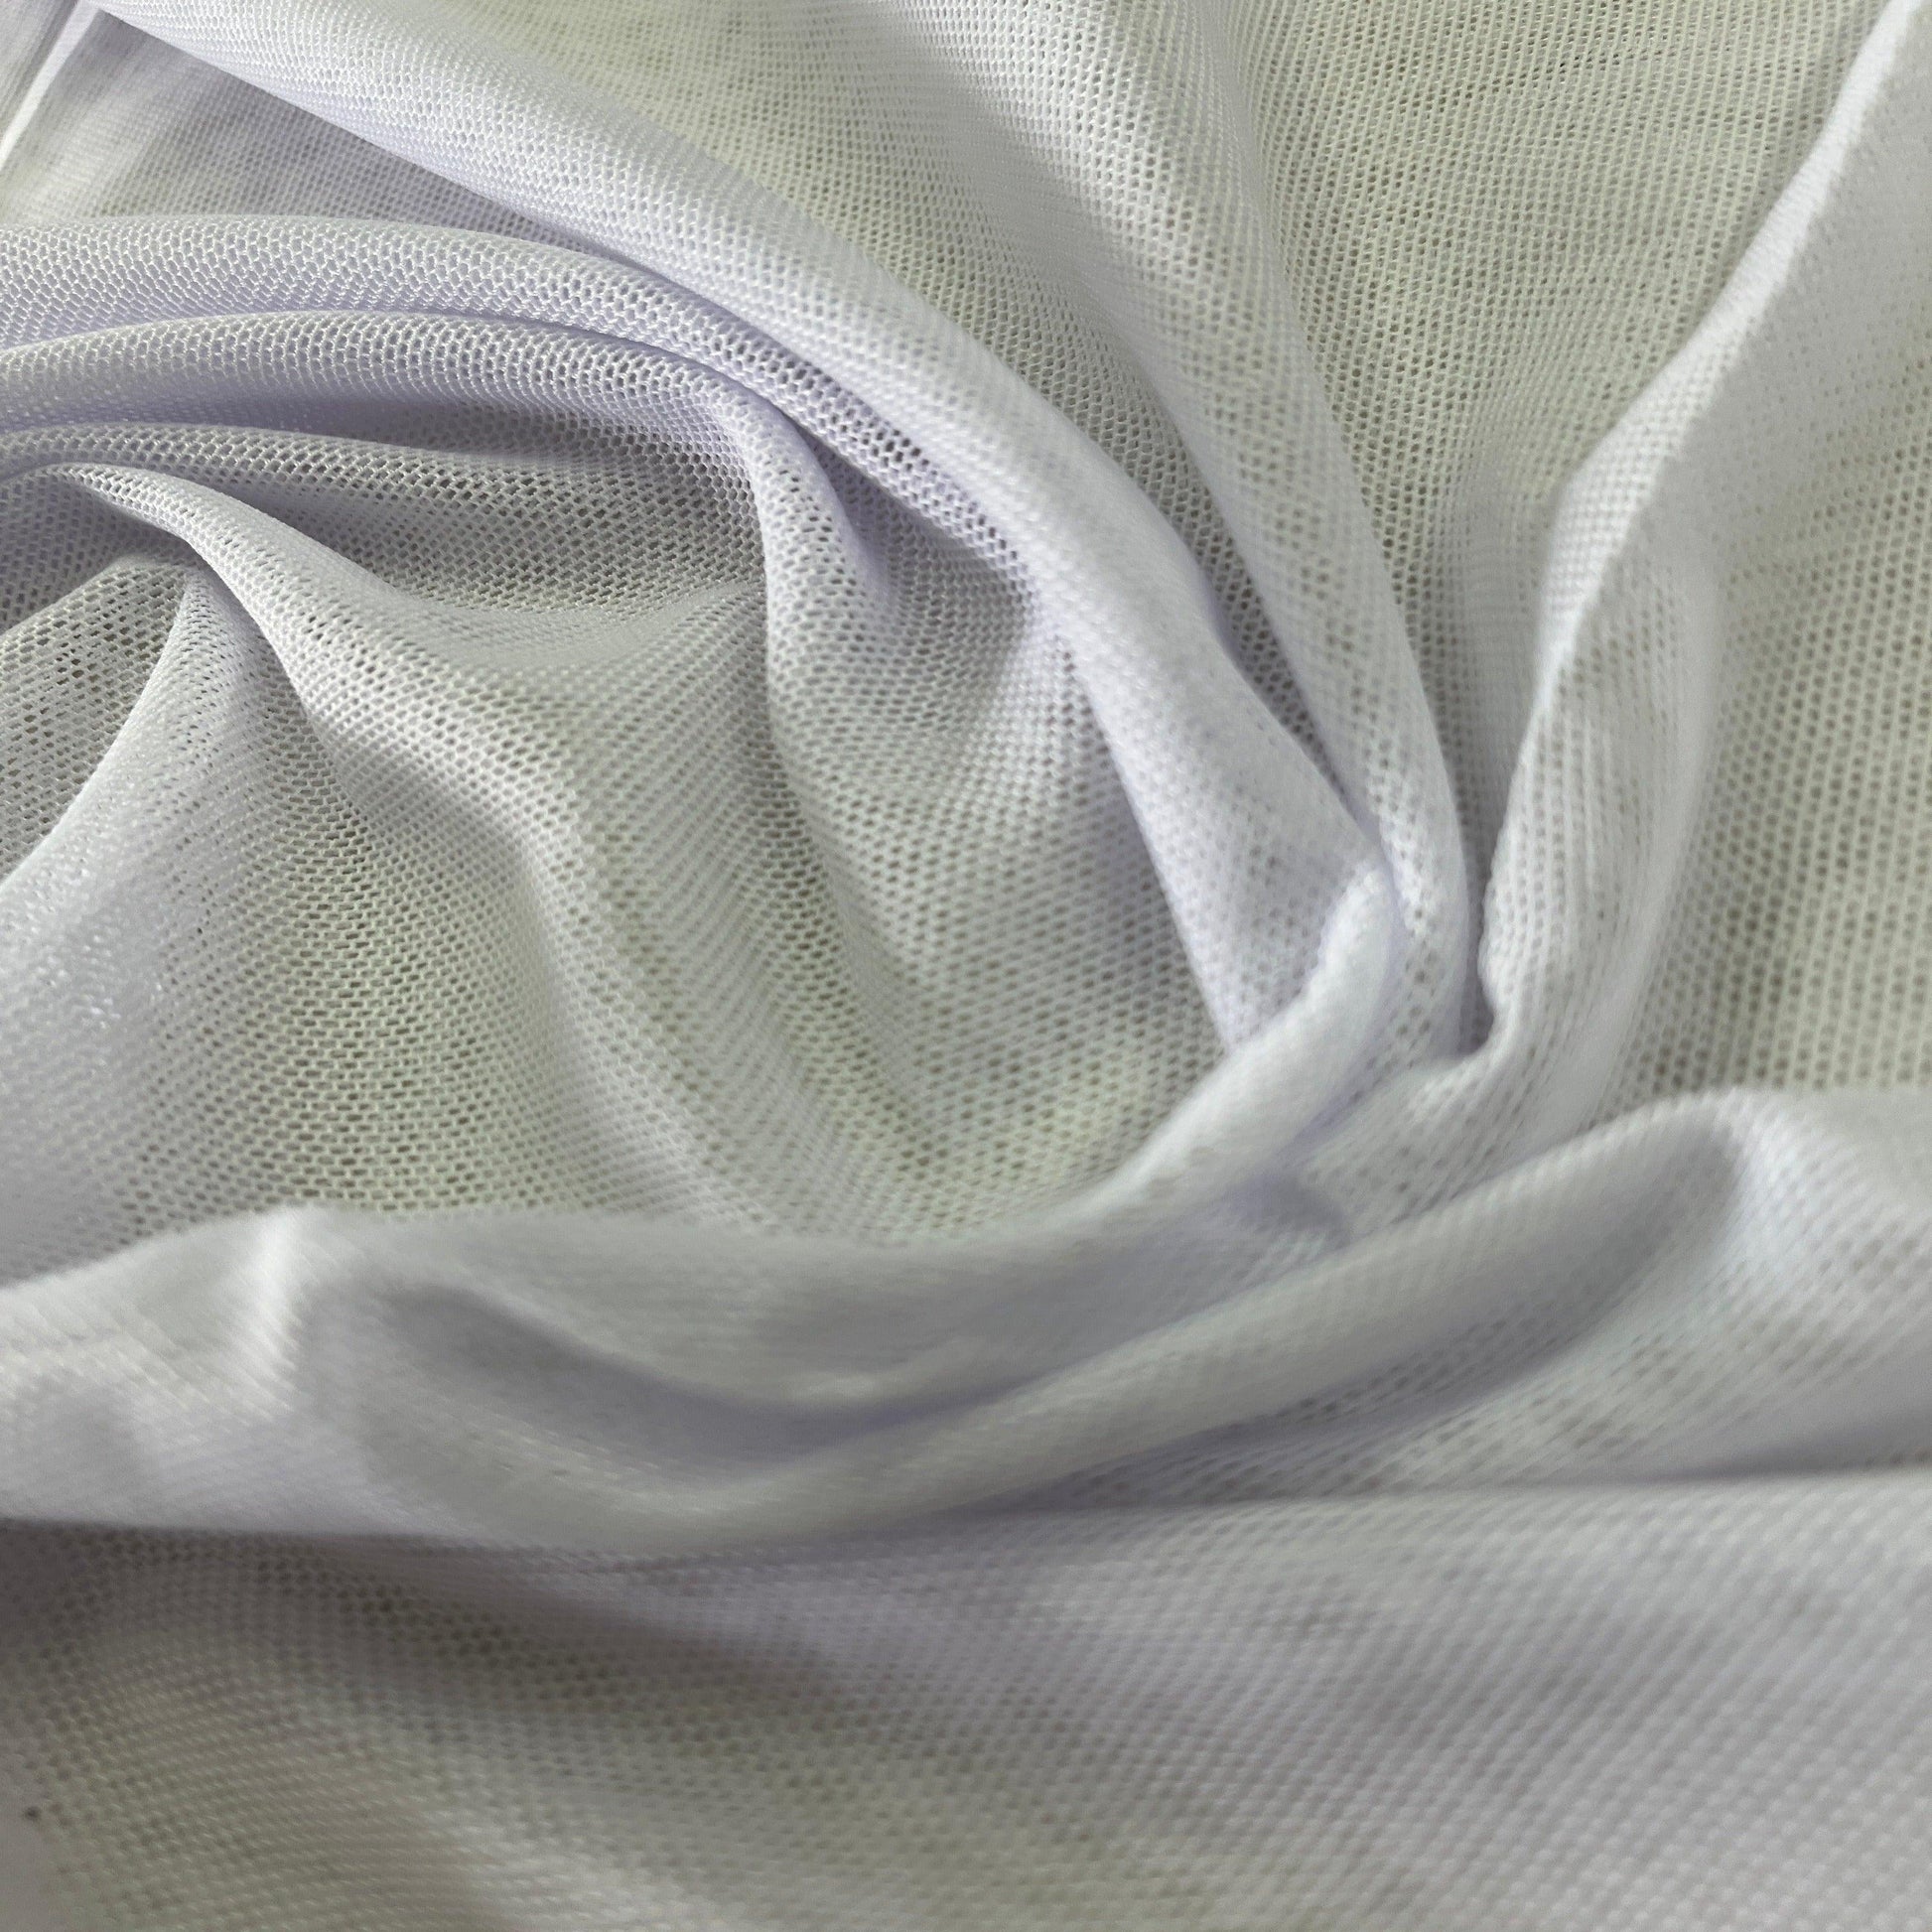 White Nylon Stretch Mesh Fabric - Nature's Fabrics